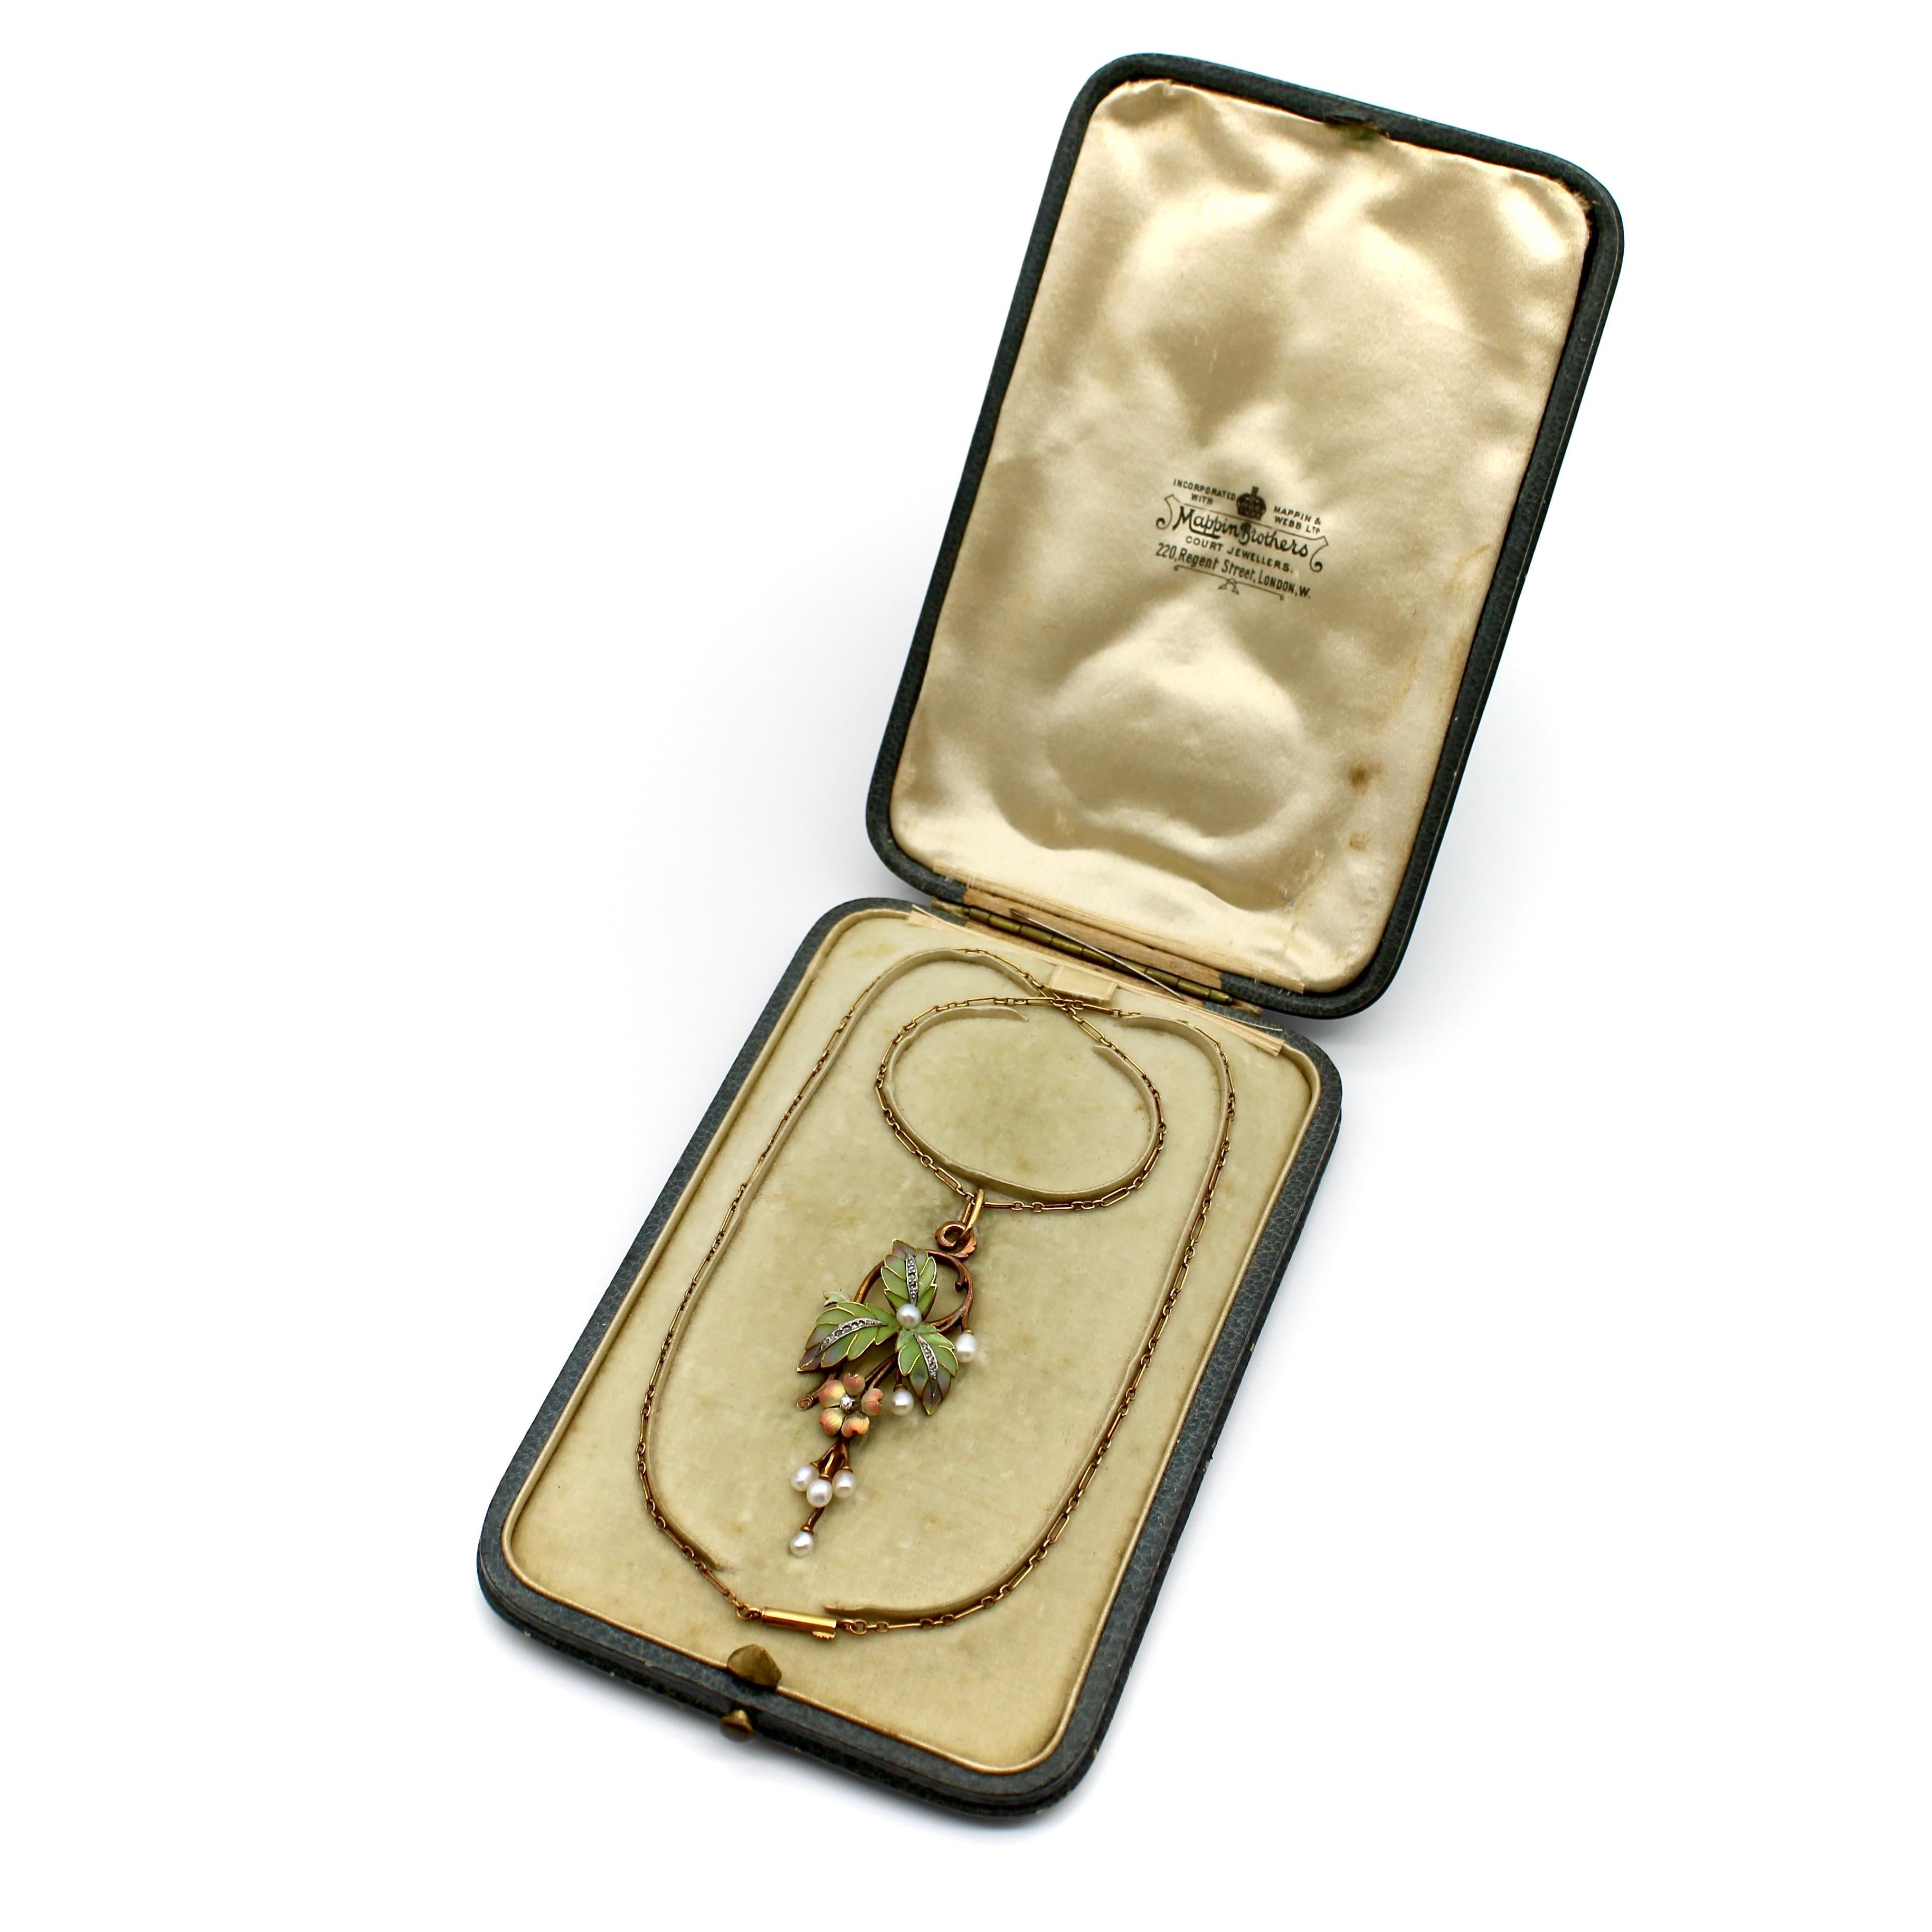 D'un design Art nouveau classique, ce collier en or rose 15 carats présente de superbes pliques-à-jour, des diamants taille rose et de magnifiques perles. La pièce maîtresse du collier est articulée en deux endroits, de sorte que les fleurs et les